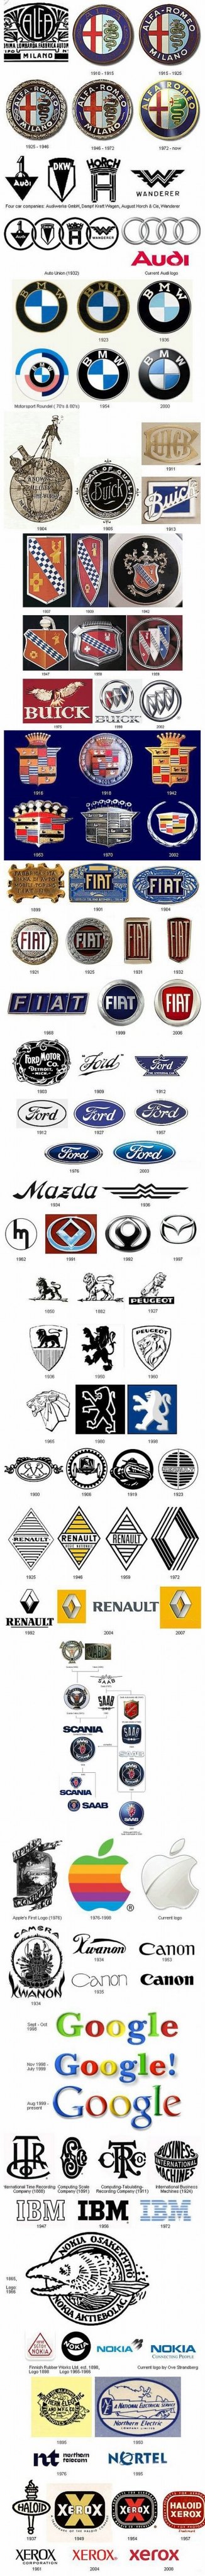 Brands evolution